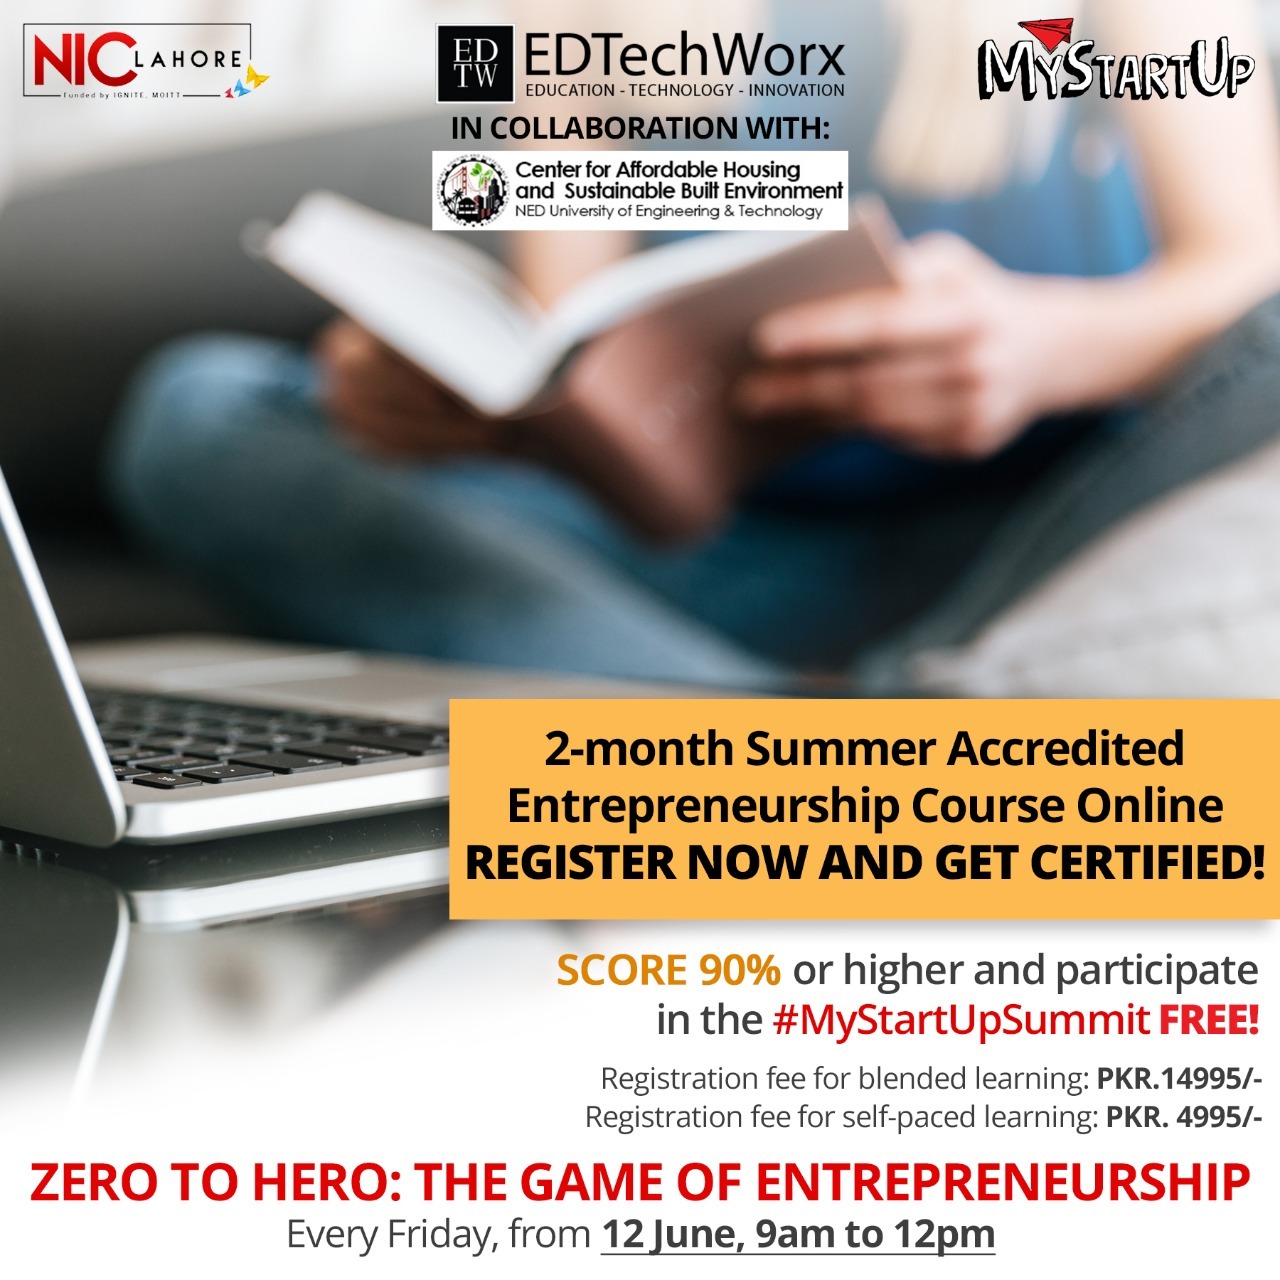  Zero to Hero - The Game of Entrepreneurship